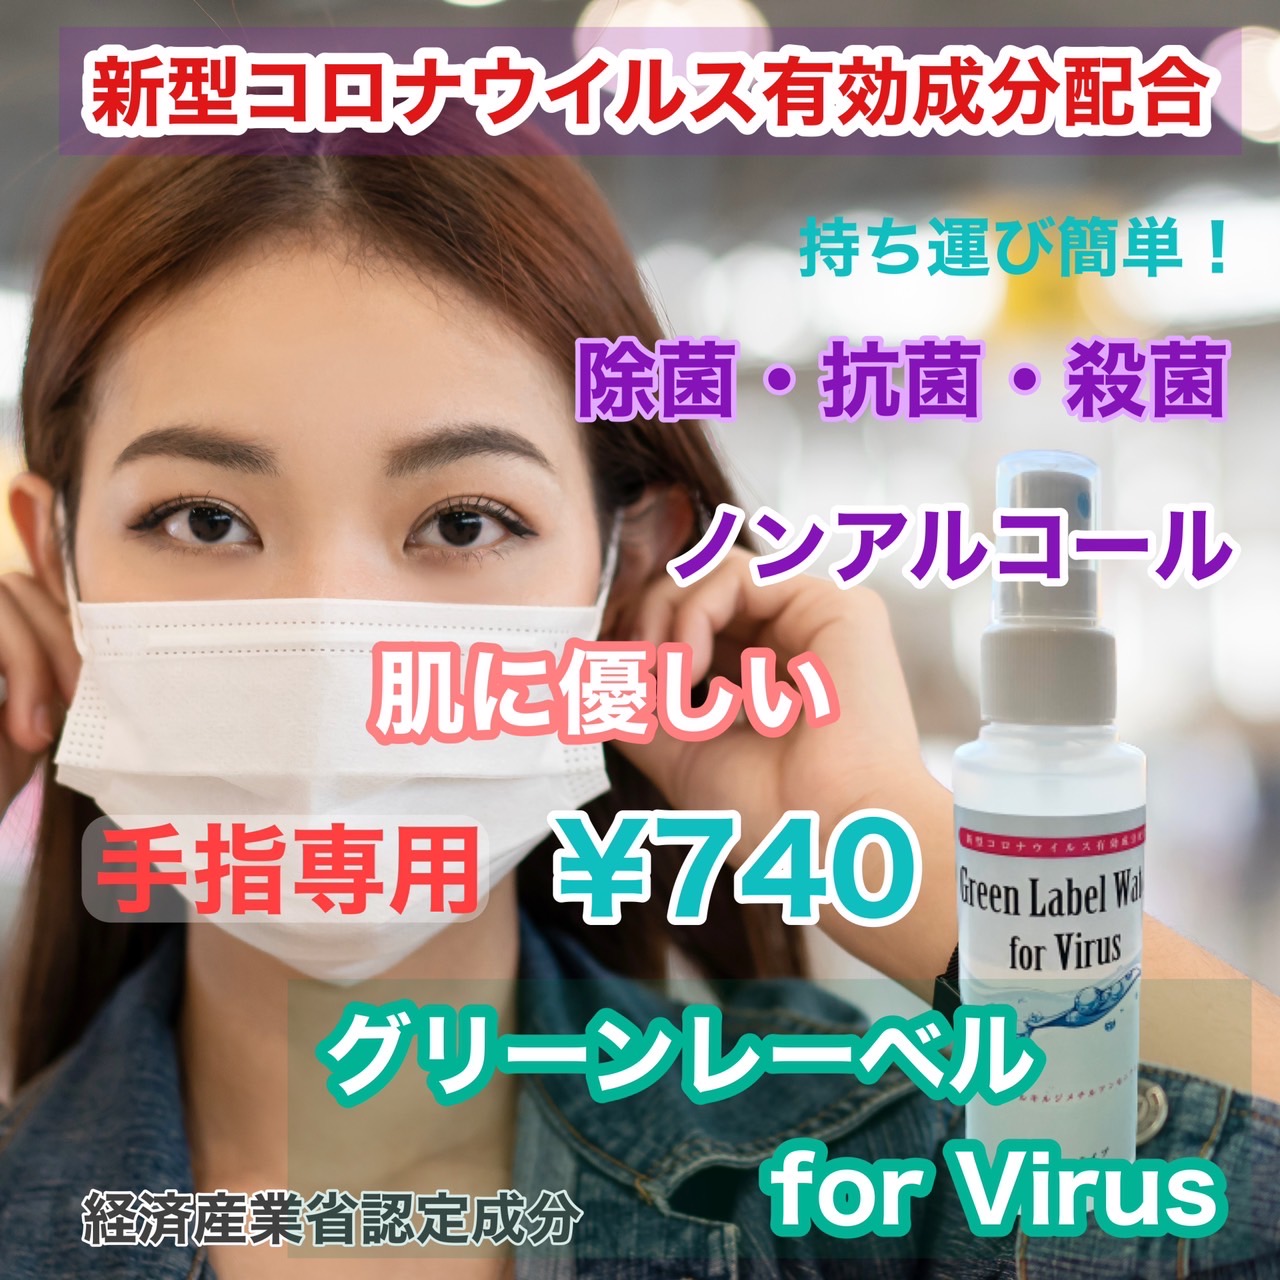 【手指消毒専用】新型コロナウイルス対応スプレー